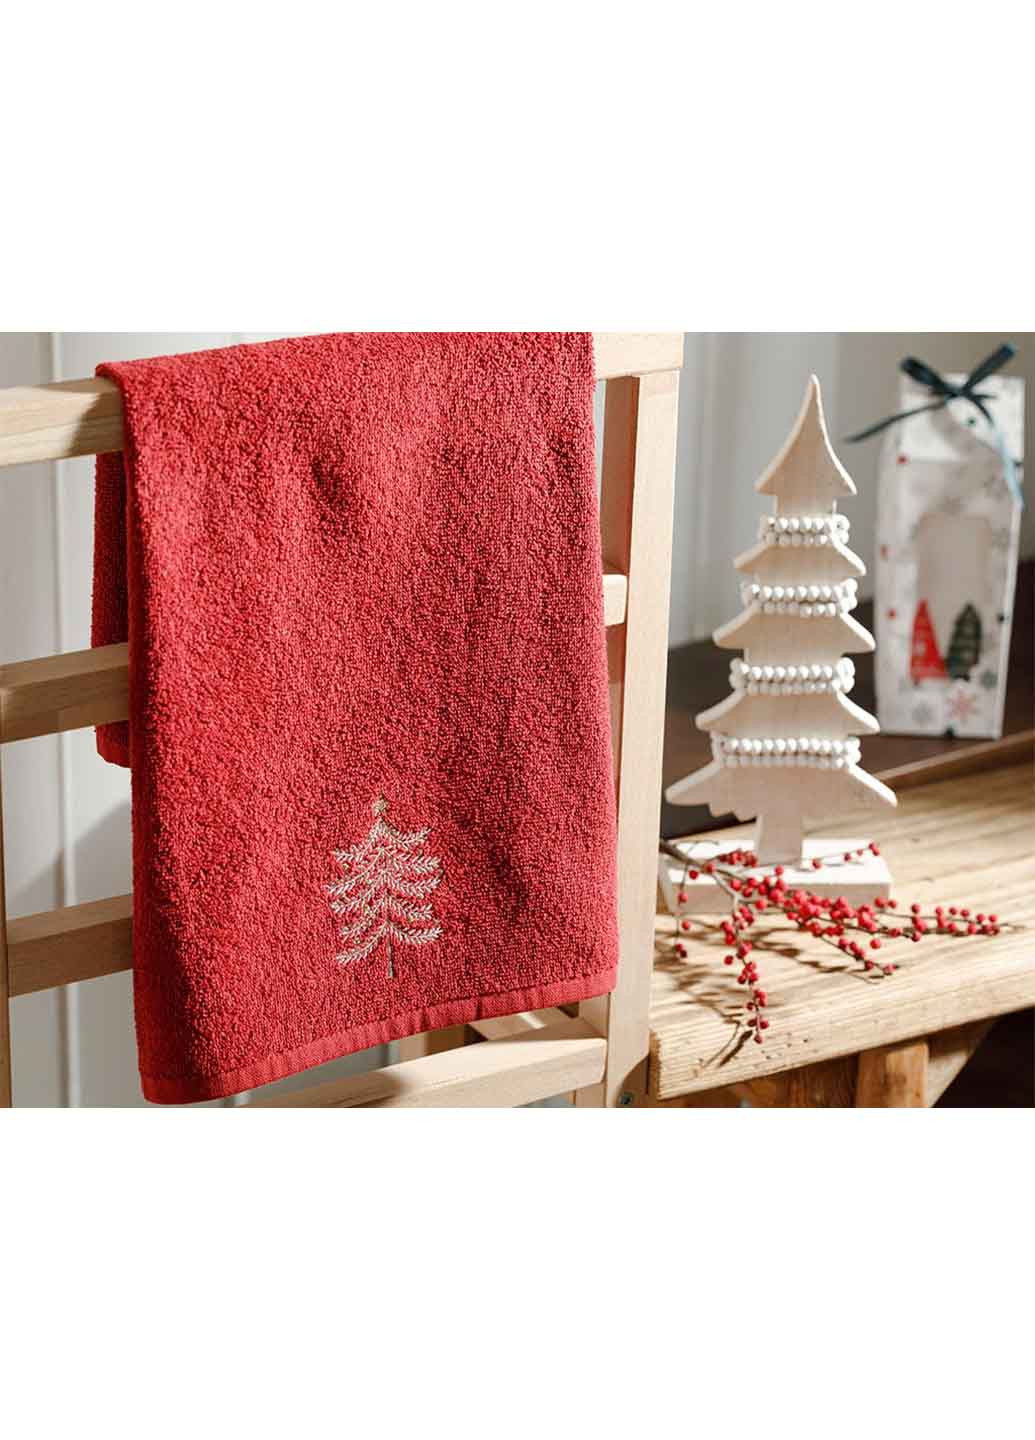 English Home полотенце, 40х60 см новогодний темно-красный производство - Турция